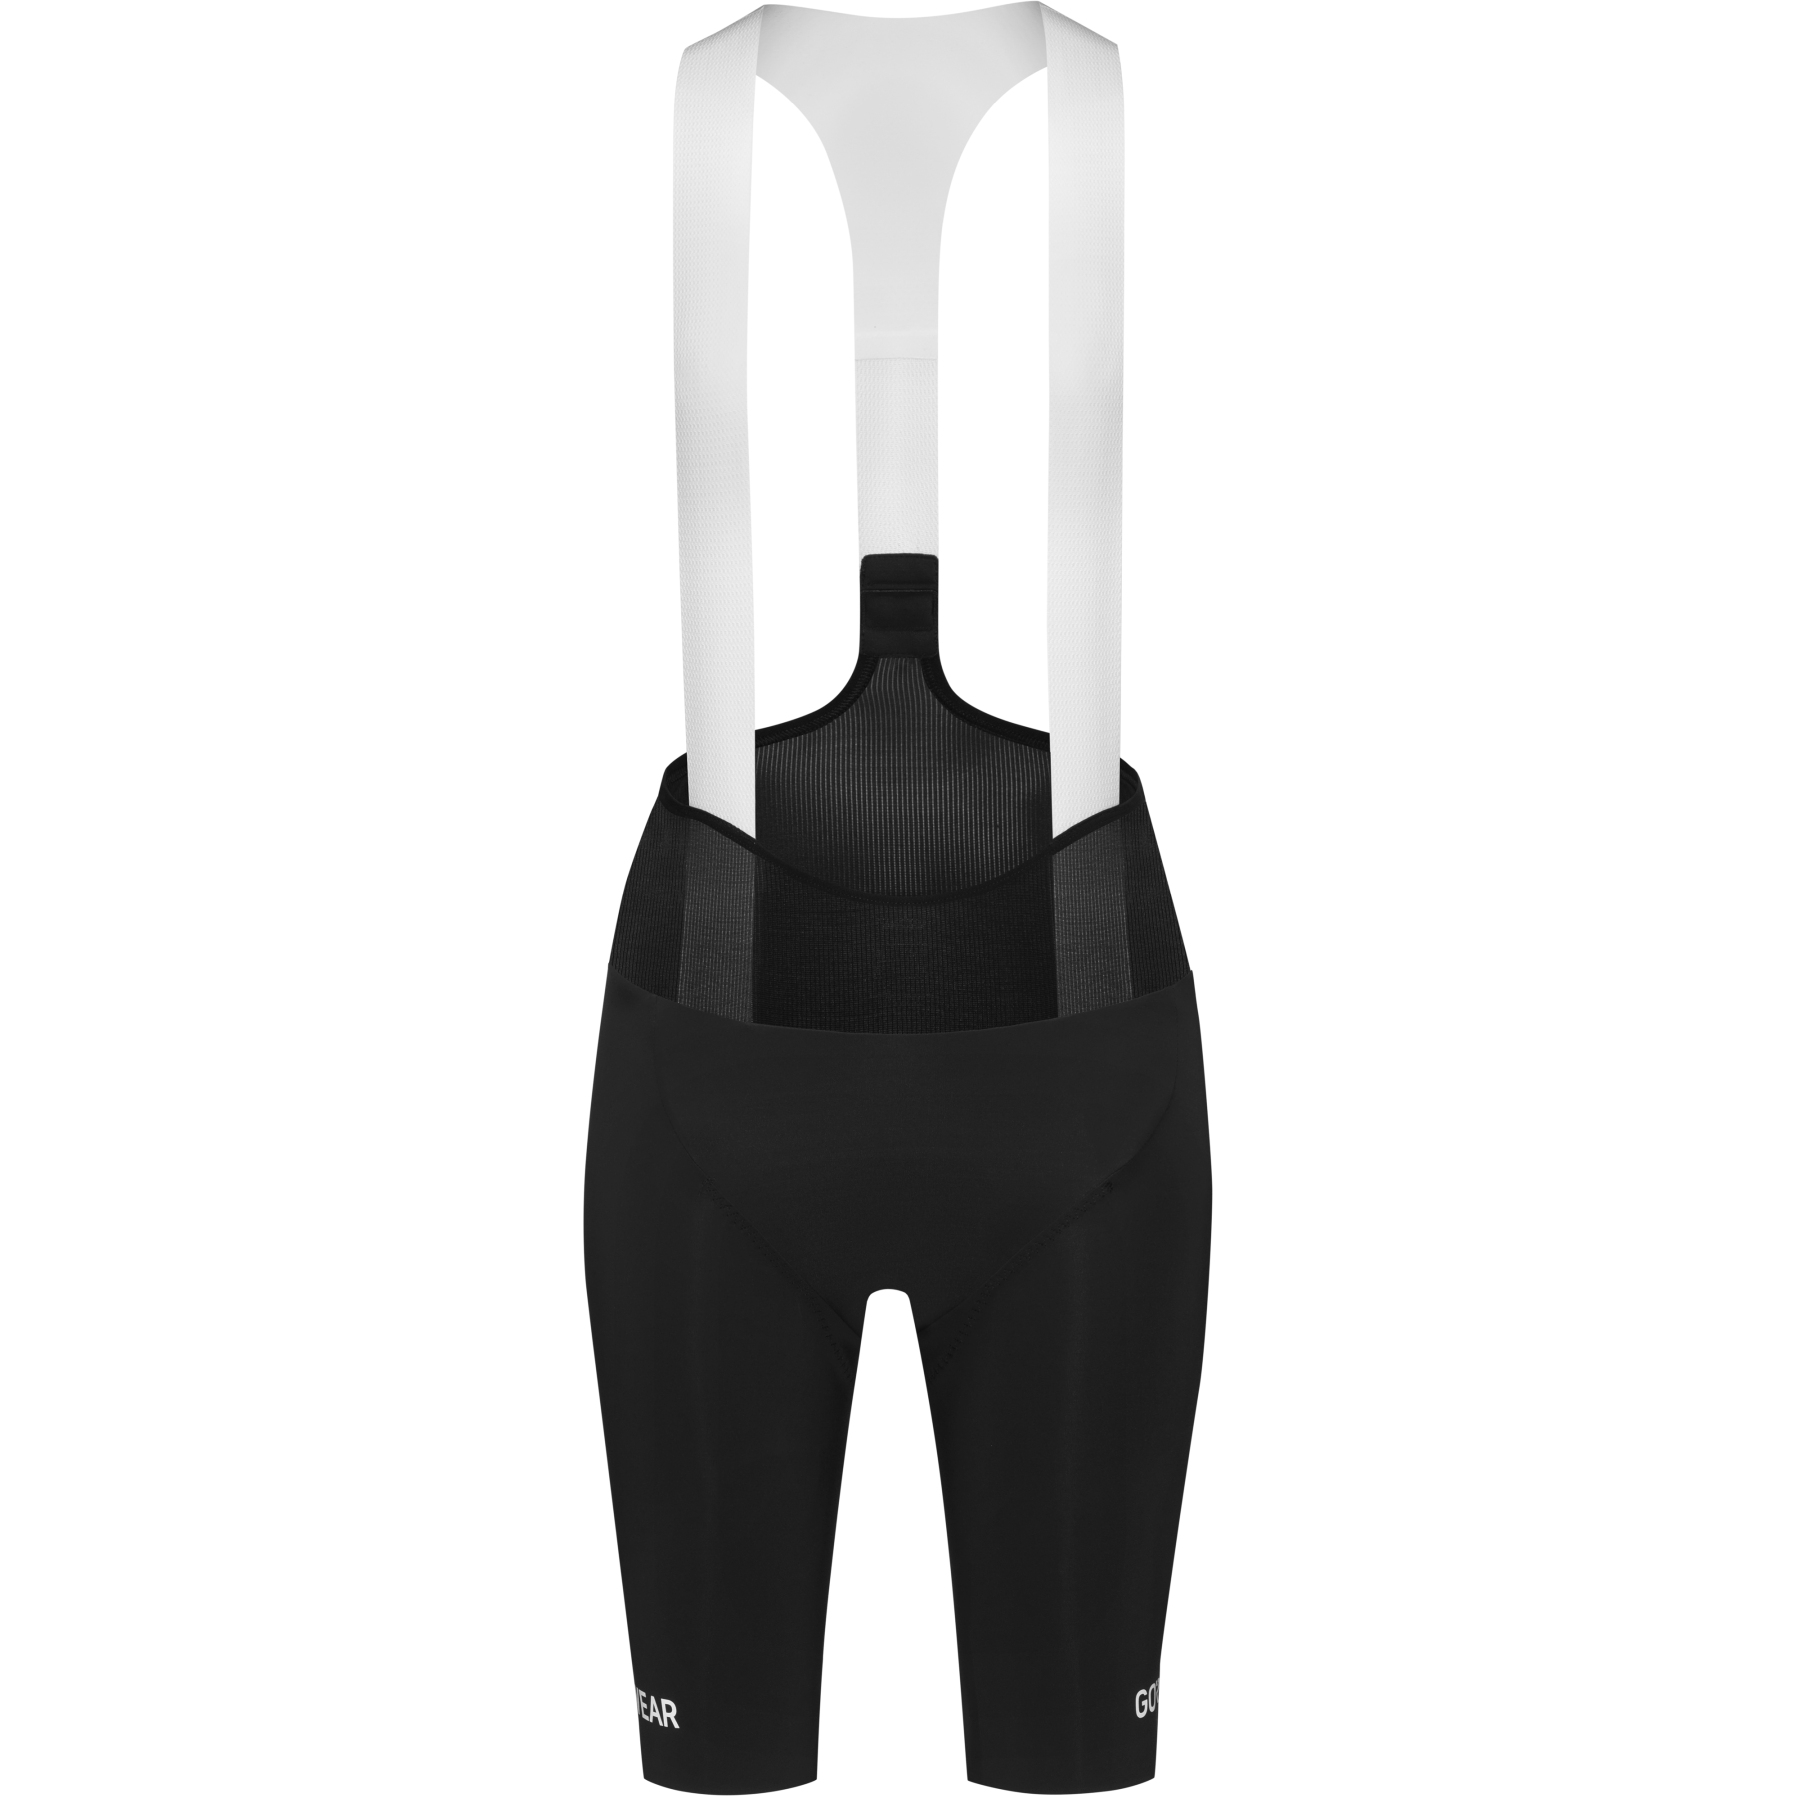 Produktbild von GOREWEAR Spinshift Fahrrad Trägerhose+ Damen - schwarz 9900